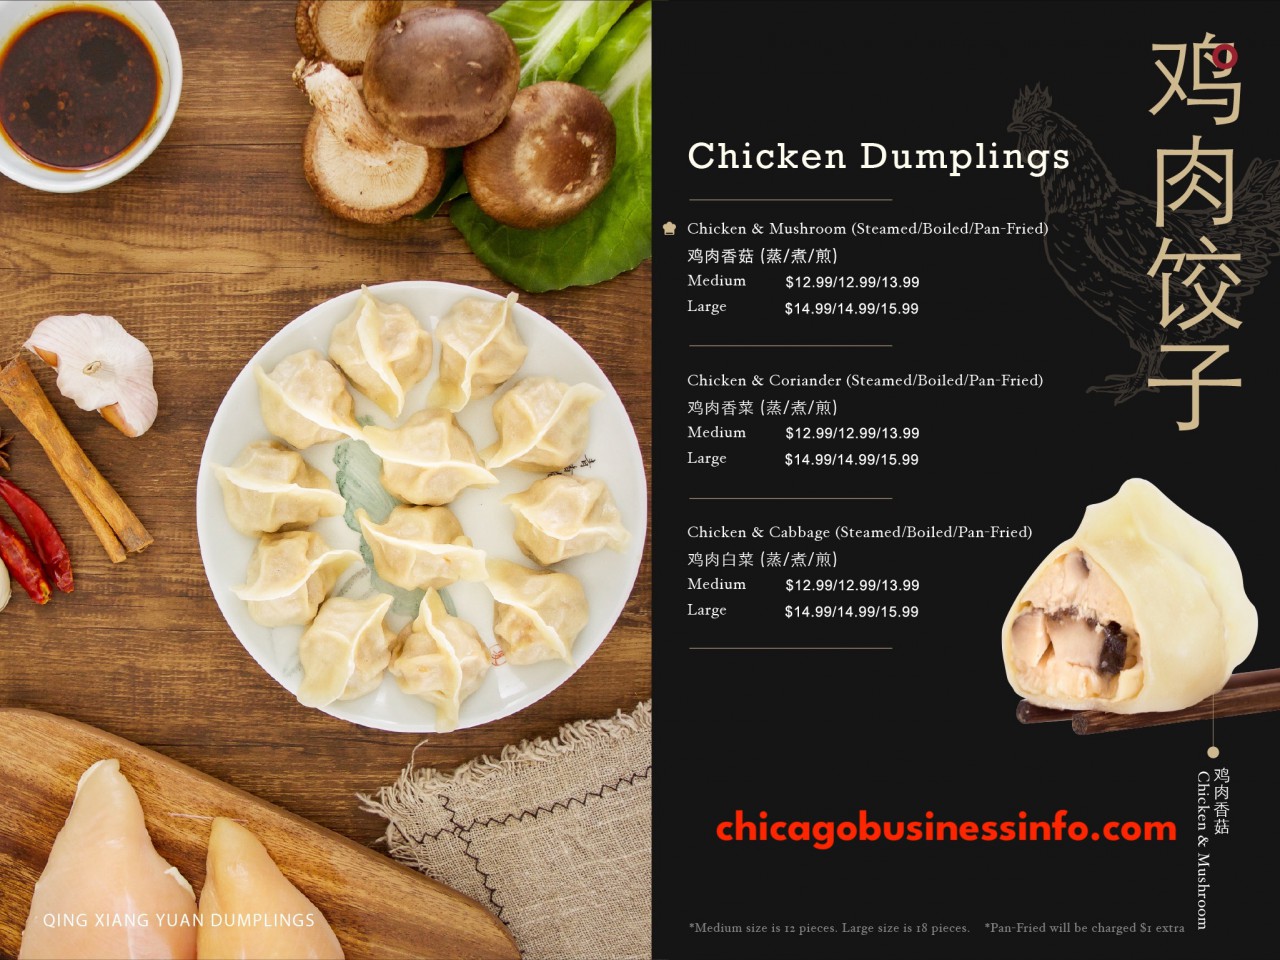 Qing Xiang Yuan Dumplings Chicago Menu 5